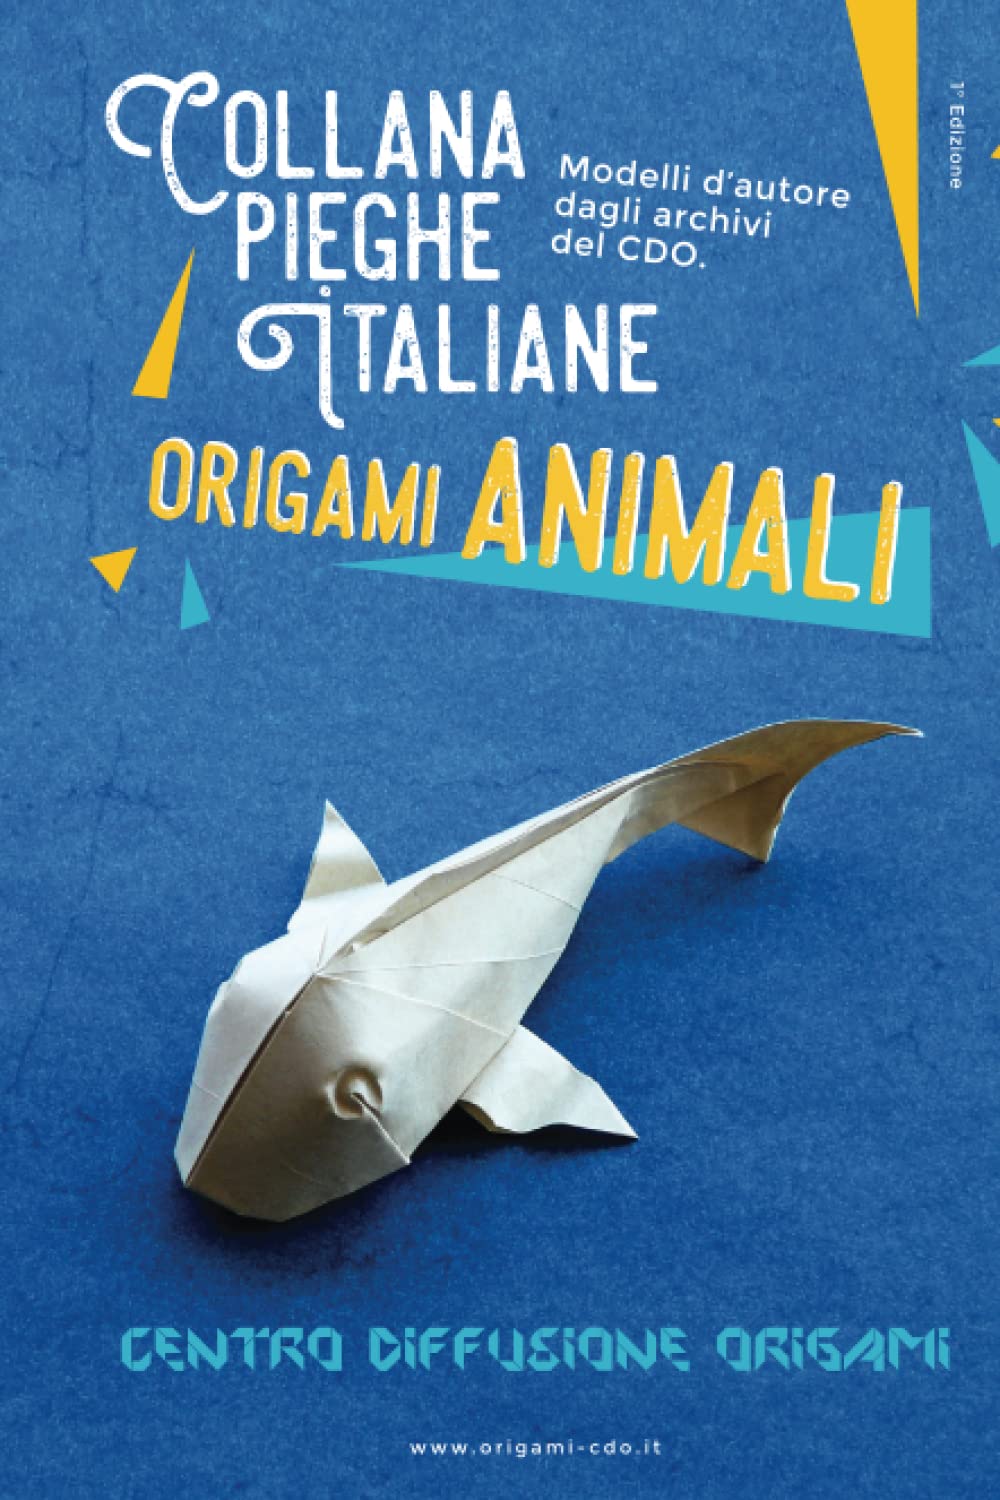 Collana pieghe Italiane - origami ANIMALI : page 156.